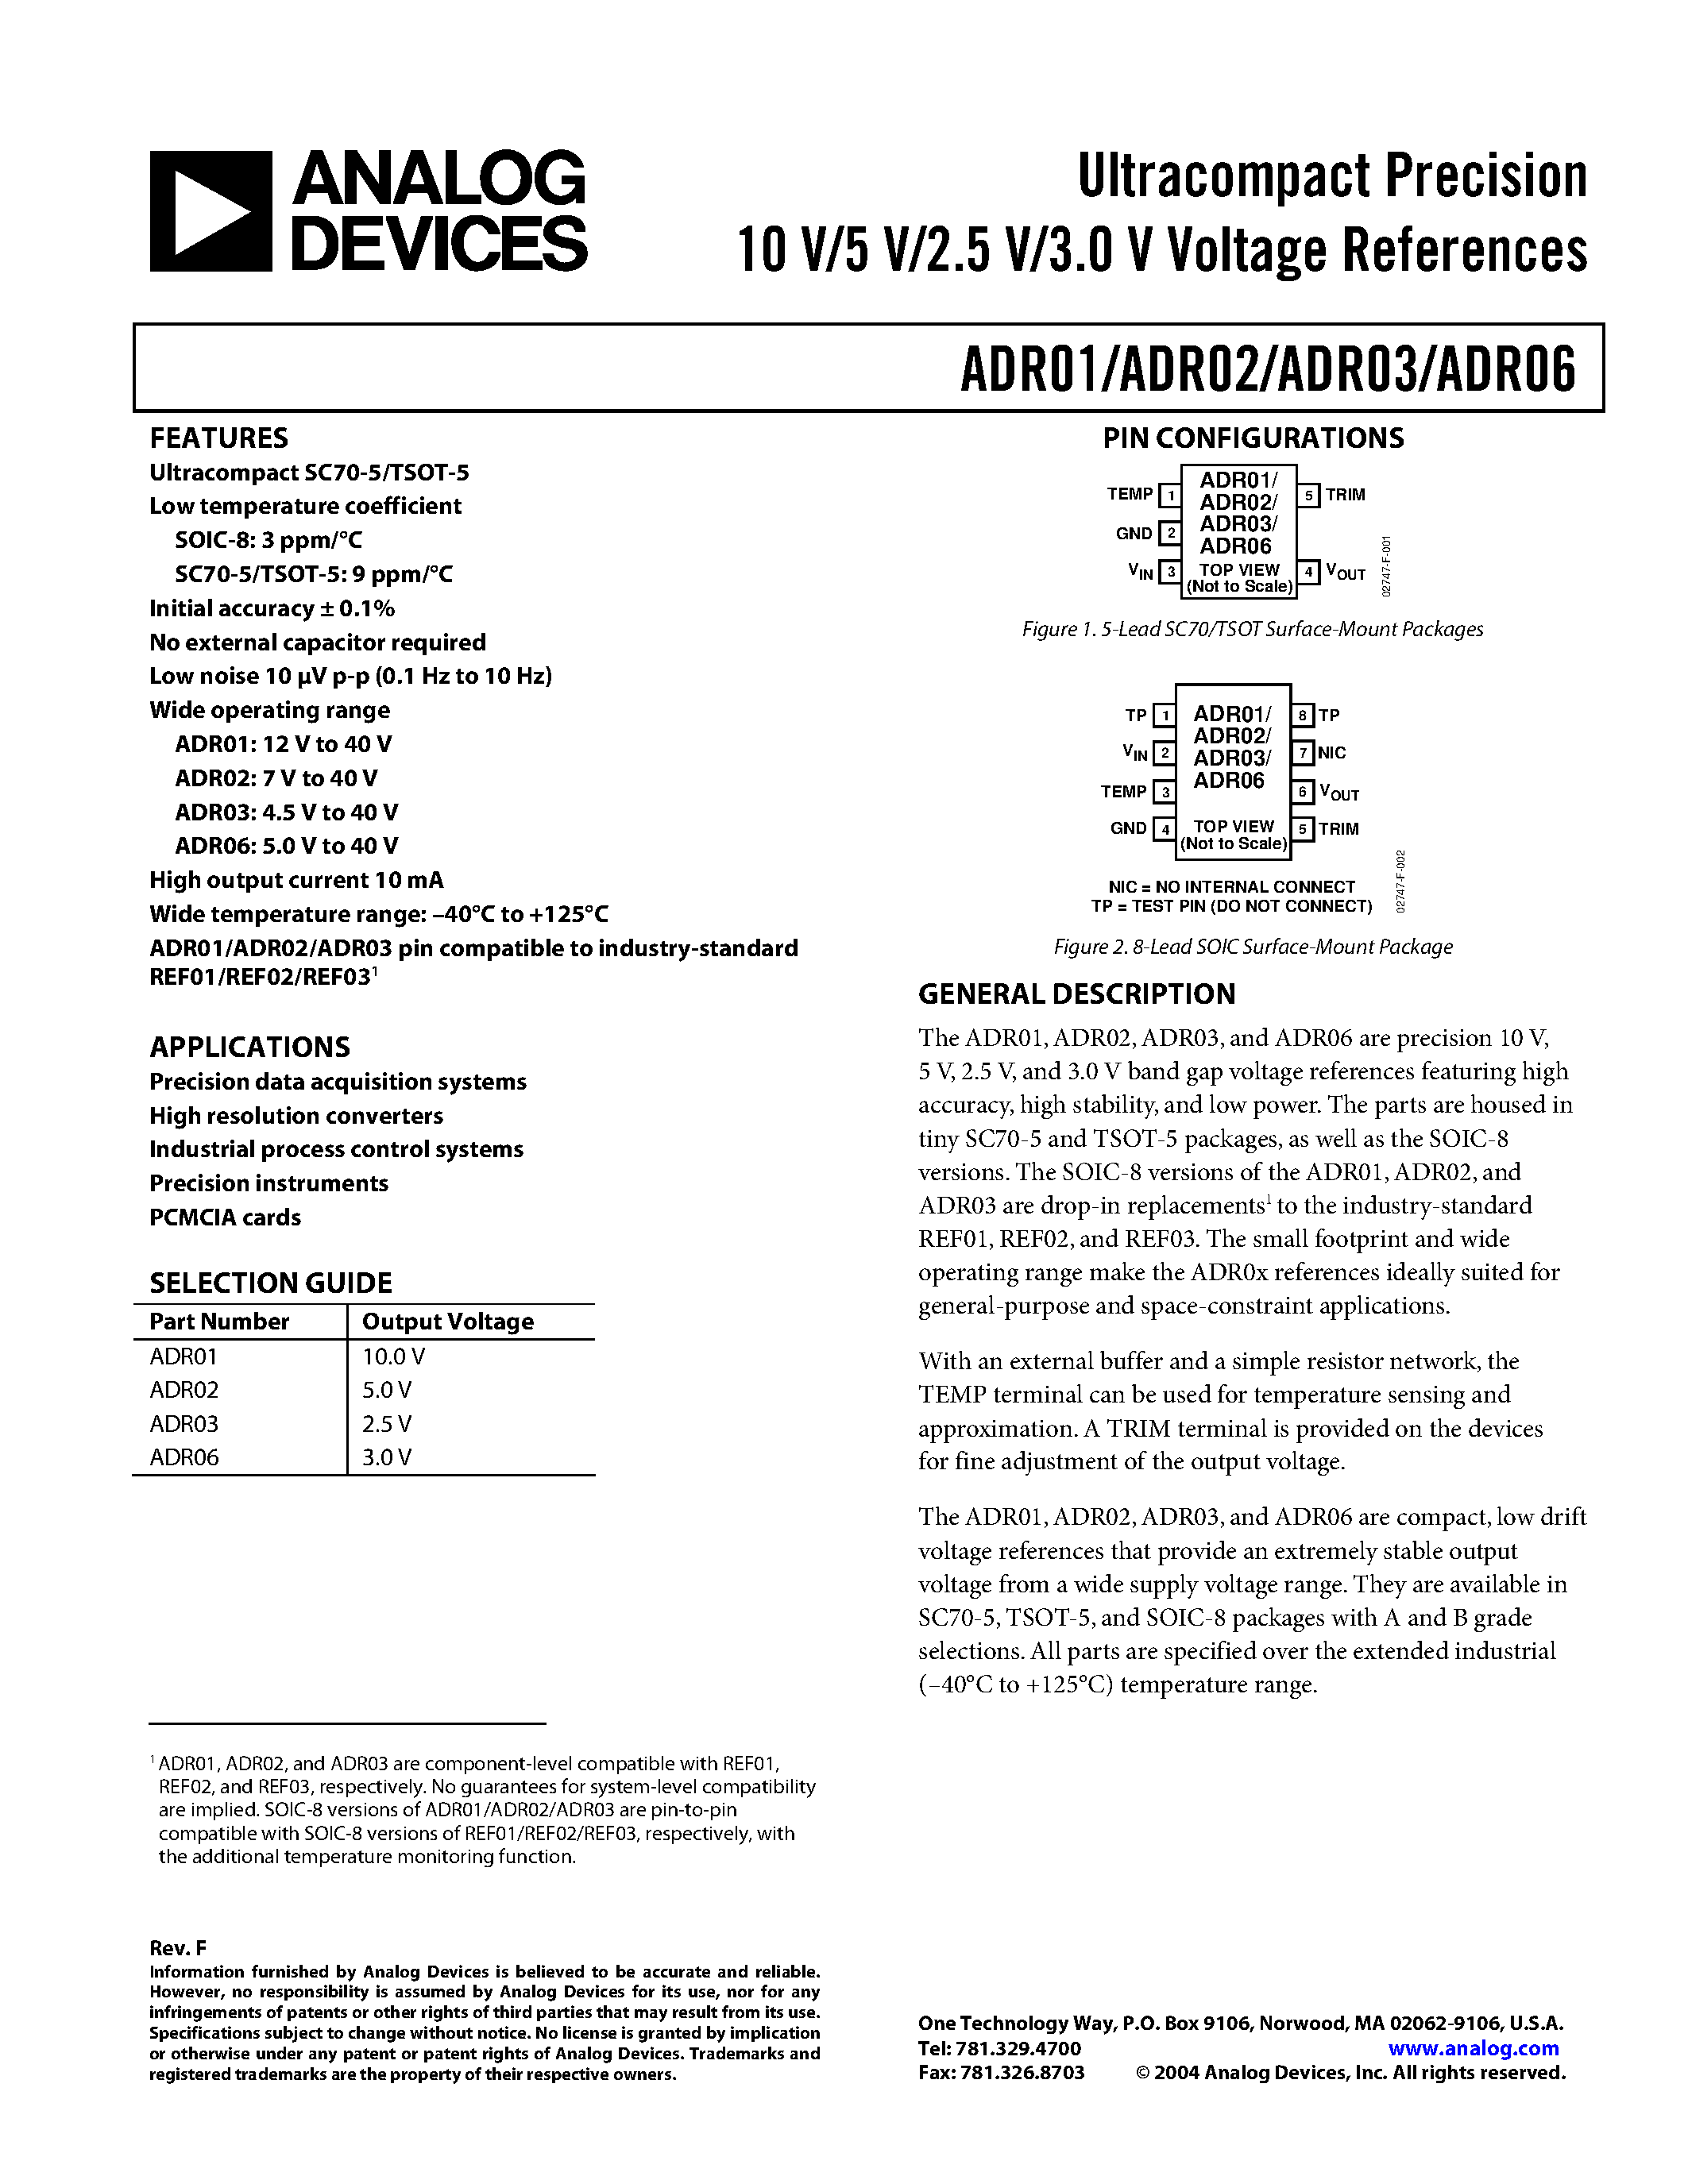 Даташит ADR01CRZ2 - Ultracompact Precision10 V/5 V/2.5 V/3.0 V Voltage References страница 1